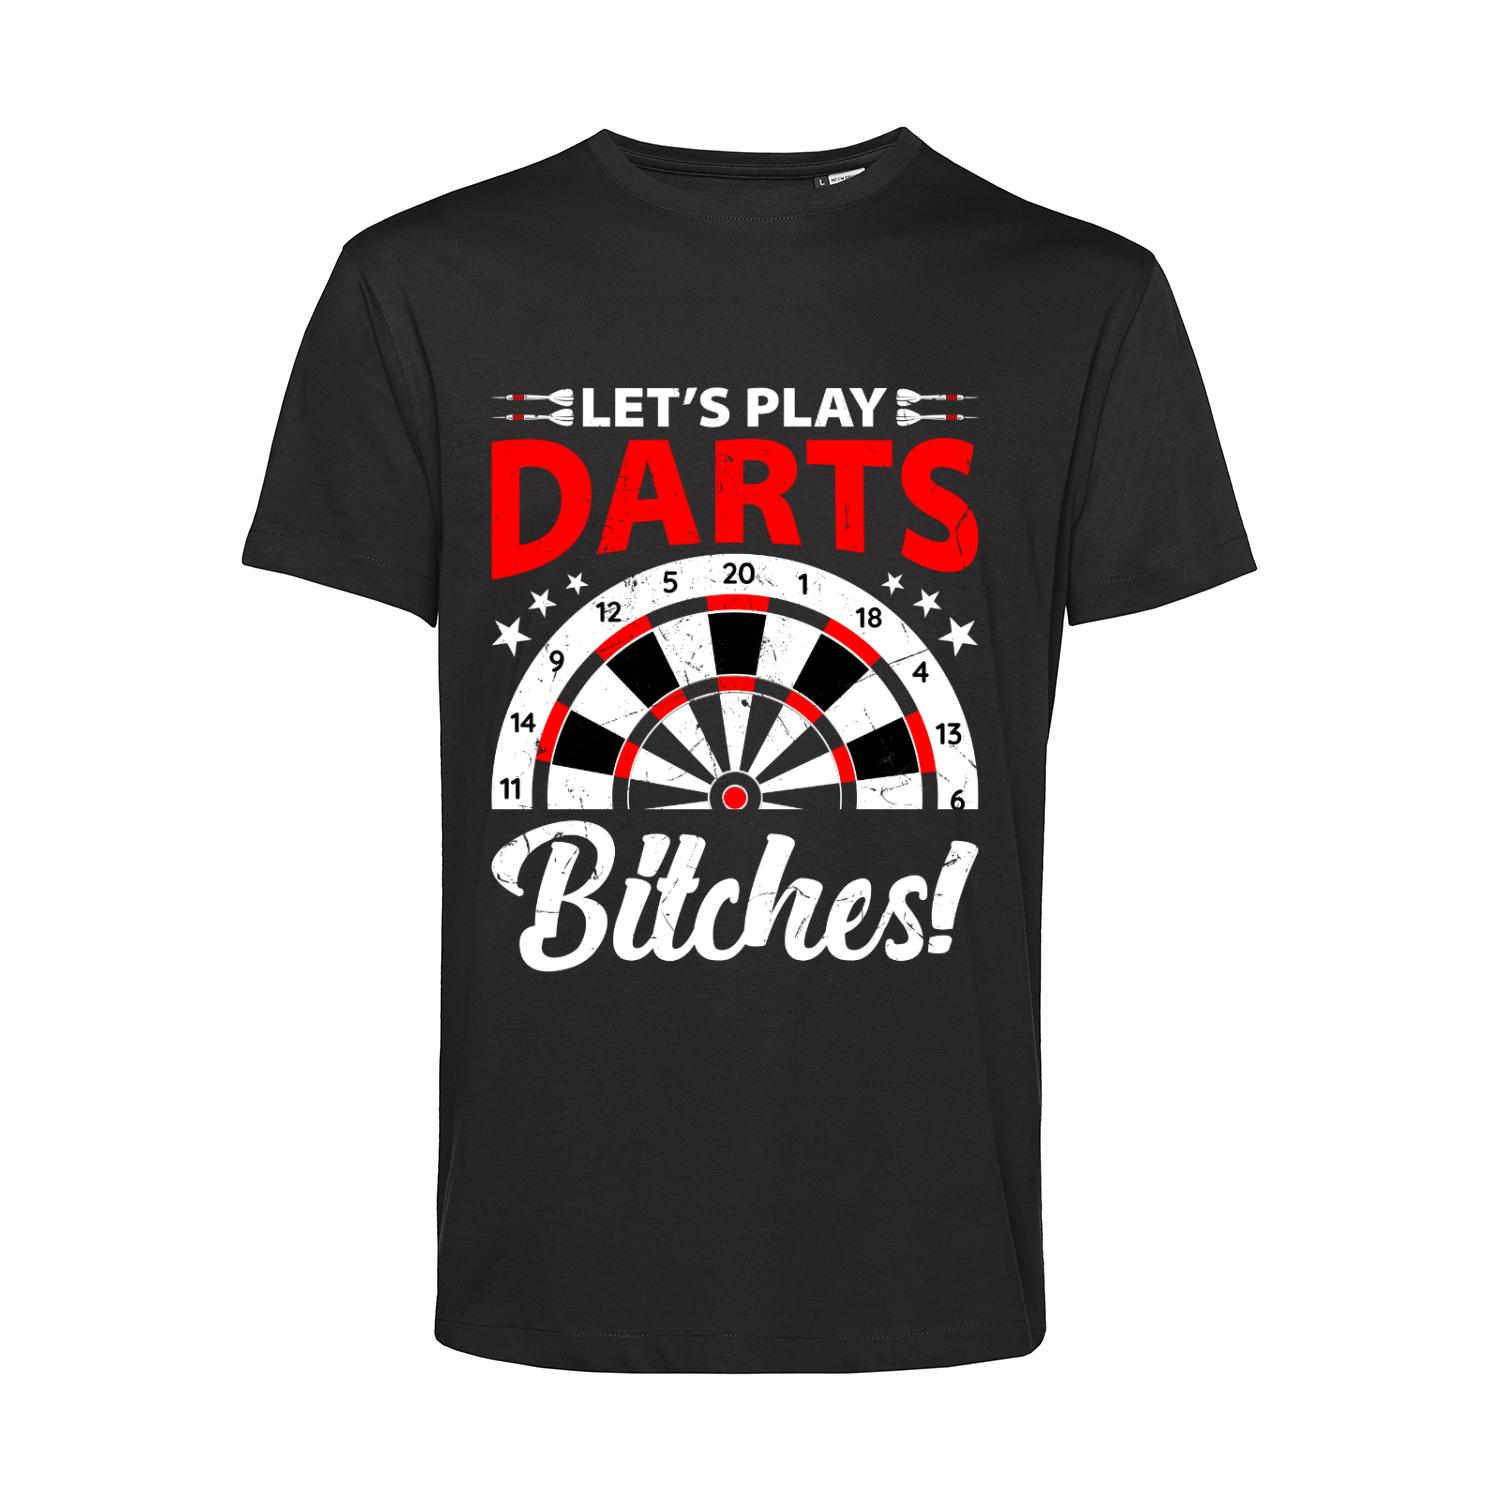 Nachhaltiges T-Shirt Herren Let's Play Darts Bitches